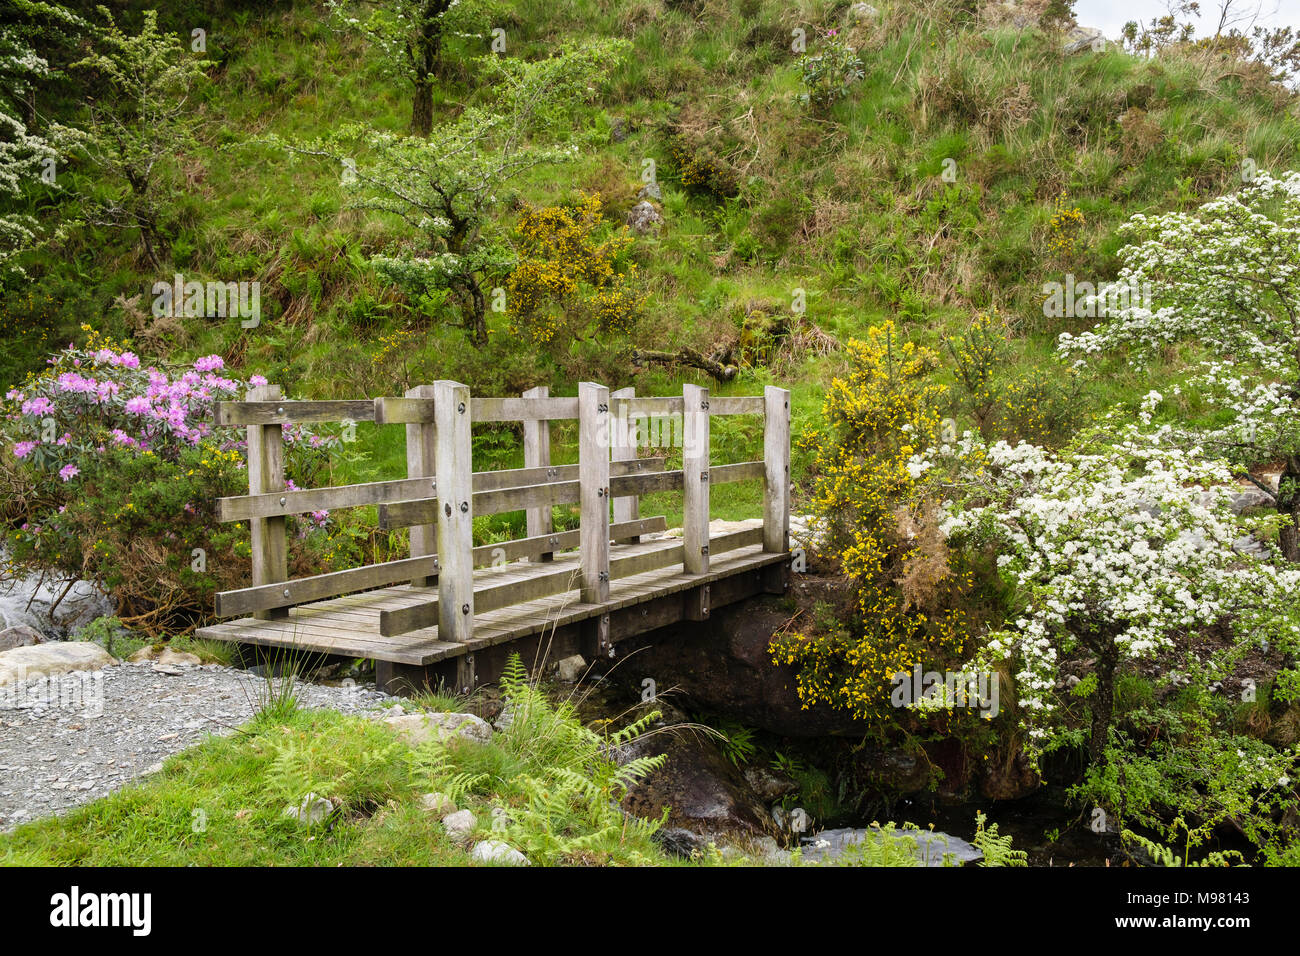 Passerelle en bois sur un sentier traversant un ruisseau avec l'Aubépine à fleurs, buissons d'Ajoncs et de Snowdonia en Rhodedendron au printemps. Pays de Galles UK Banque D'Images